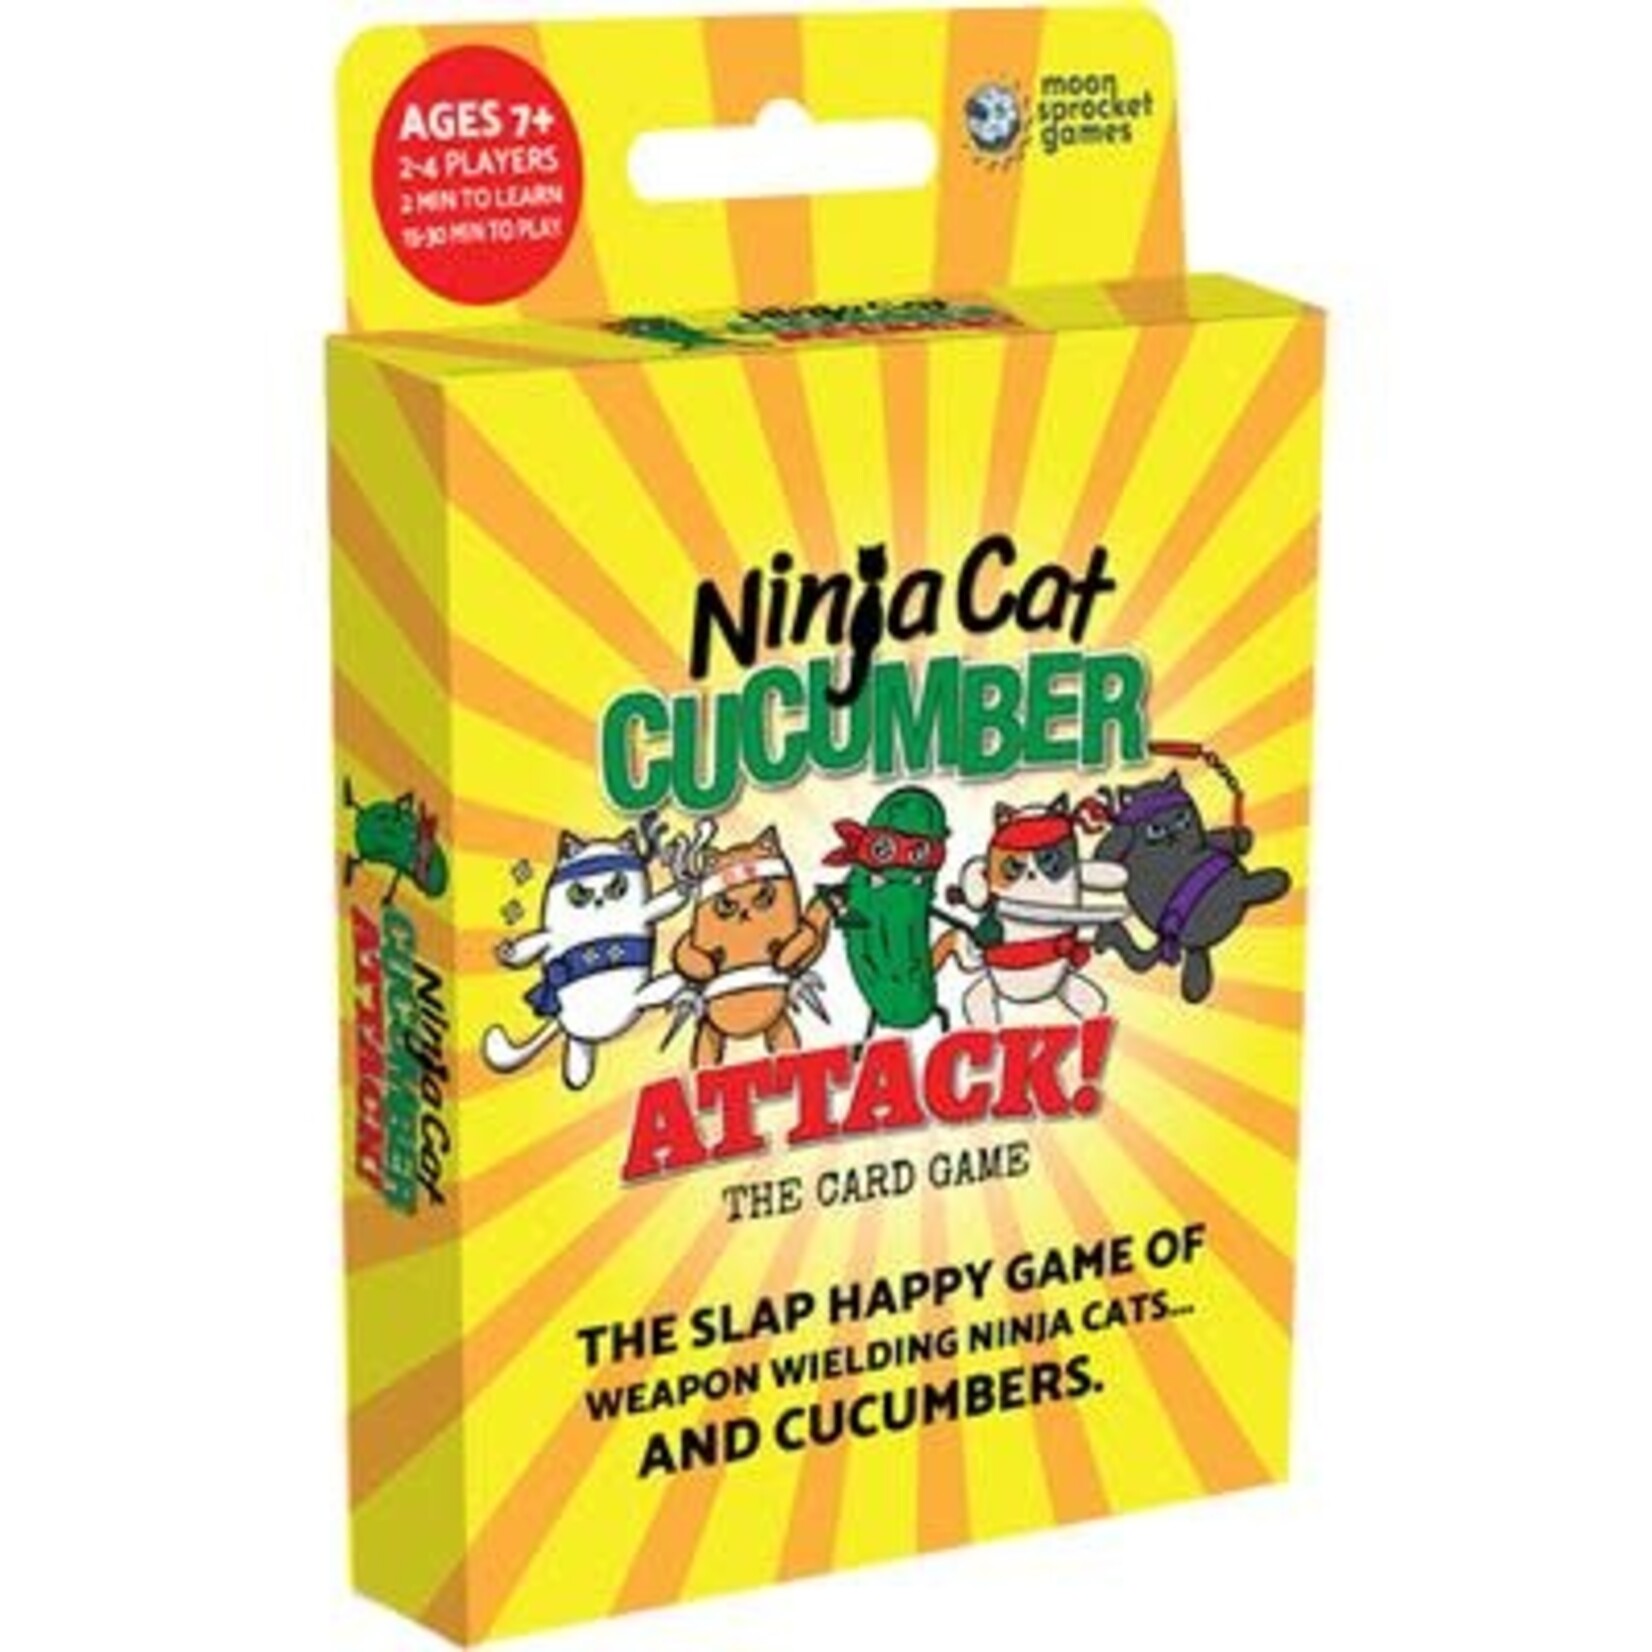 Moonsprocket Games Ninja Cat Cucumber Attack!